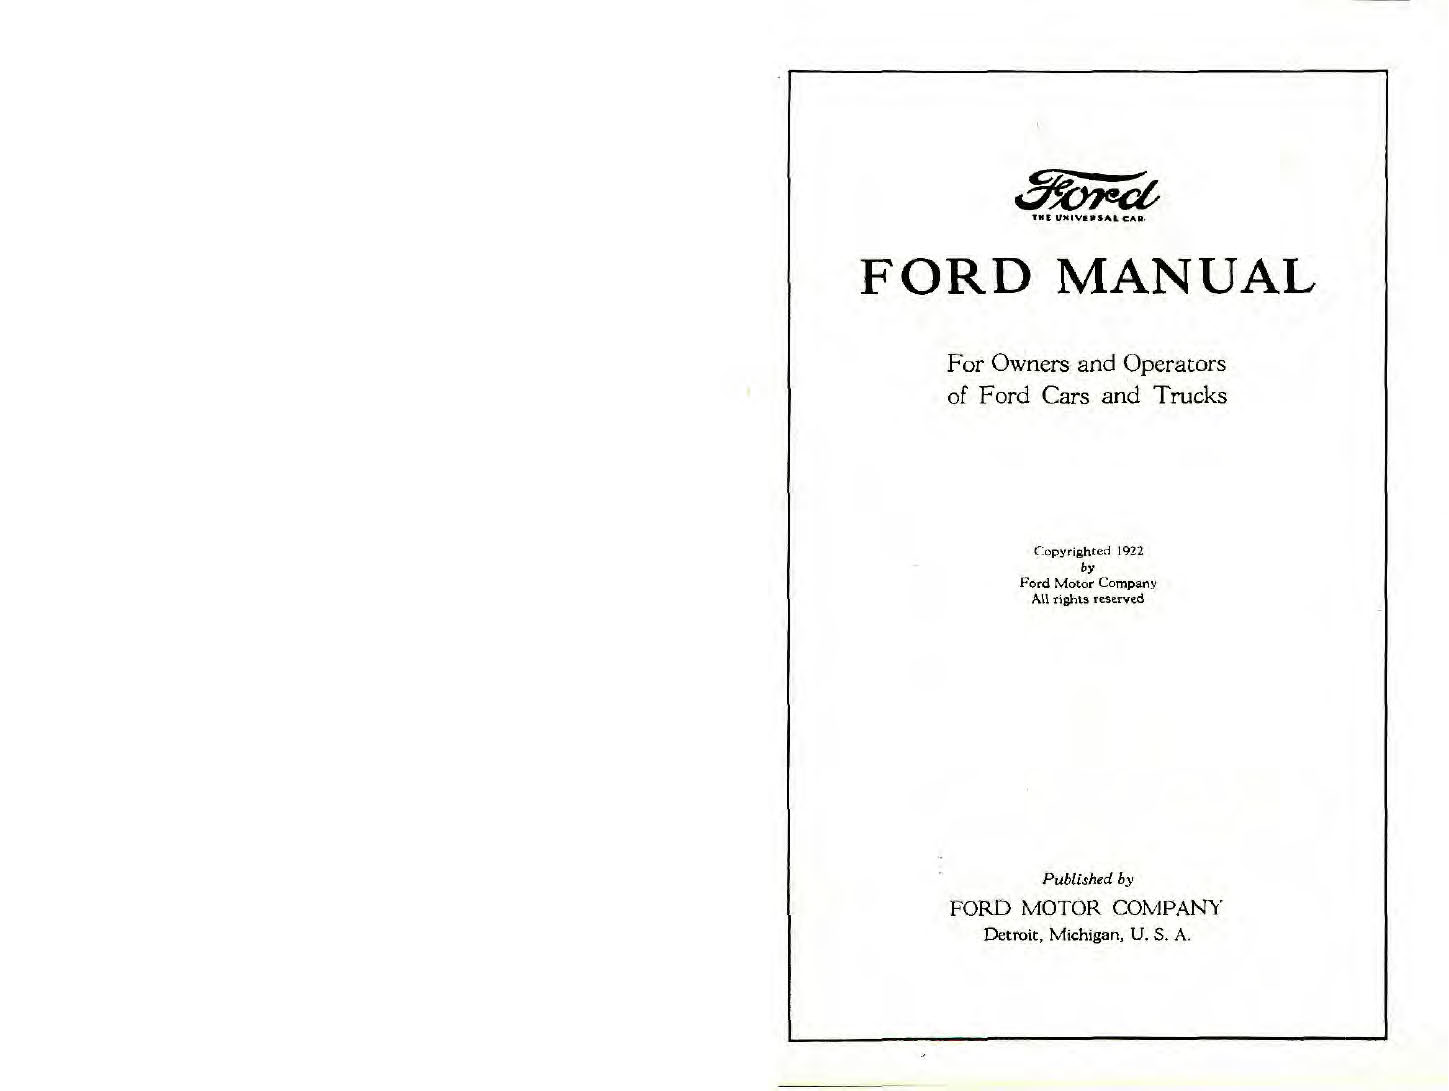 n_1922 Ford Manual-00a-01.jpg